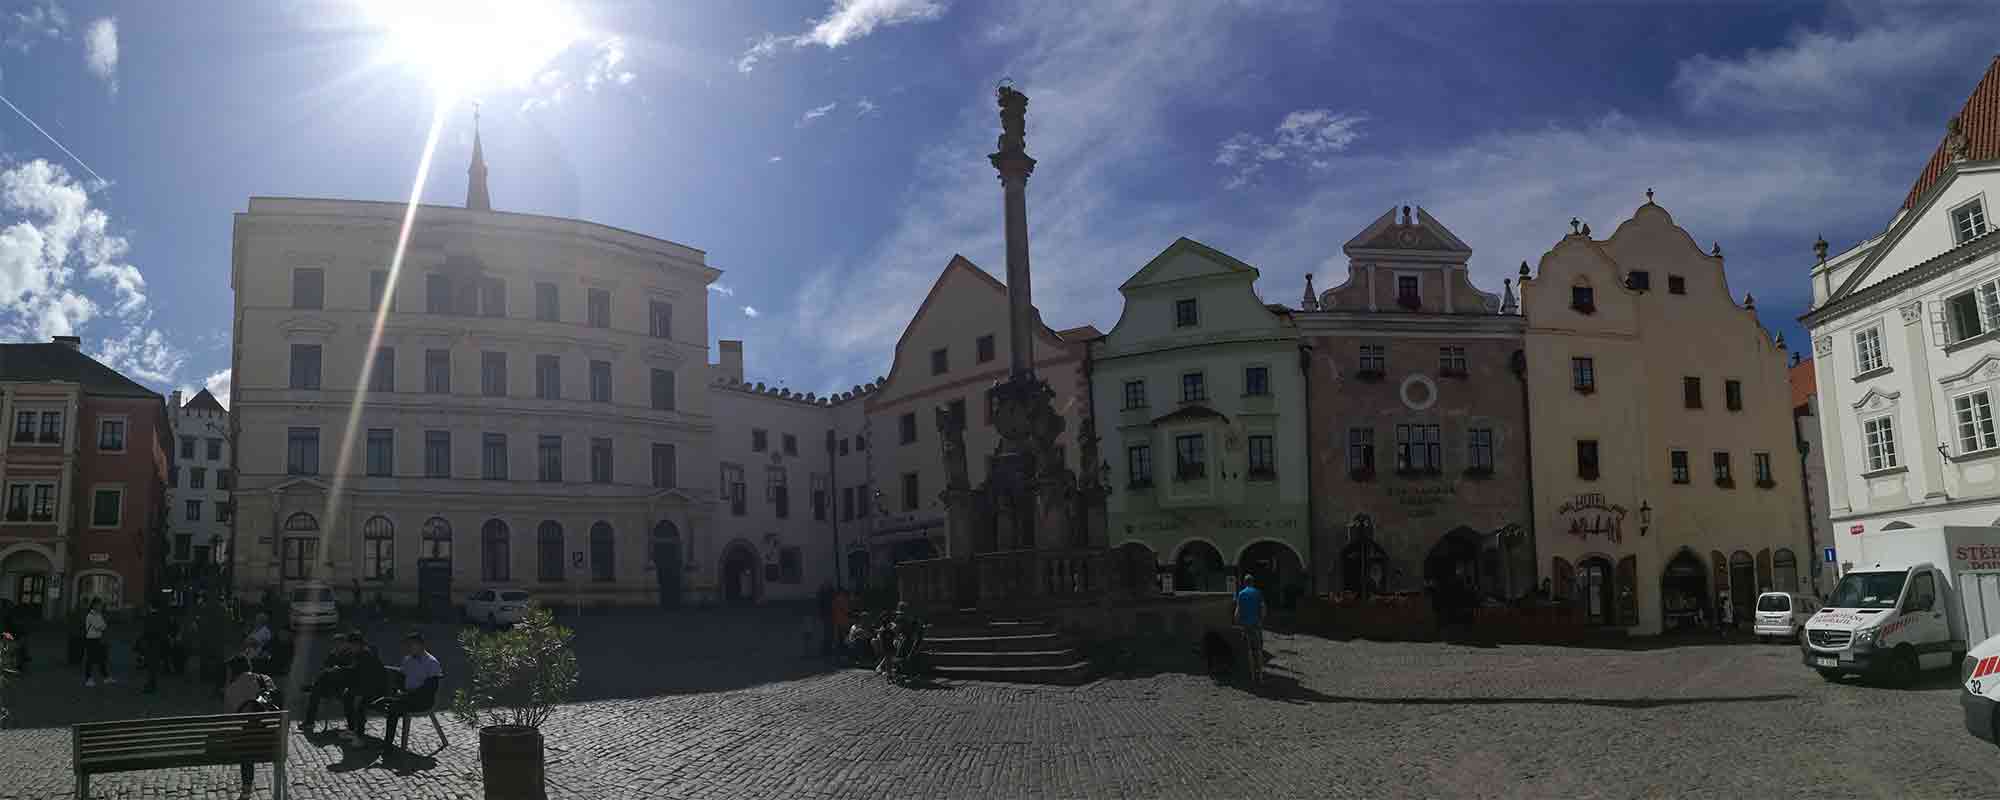 Malebné náměstí v Českém Krumlově